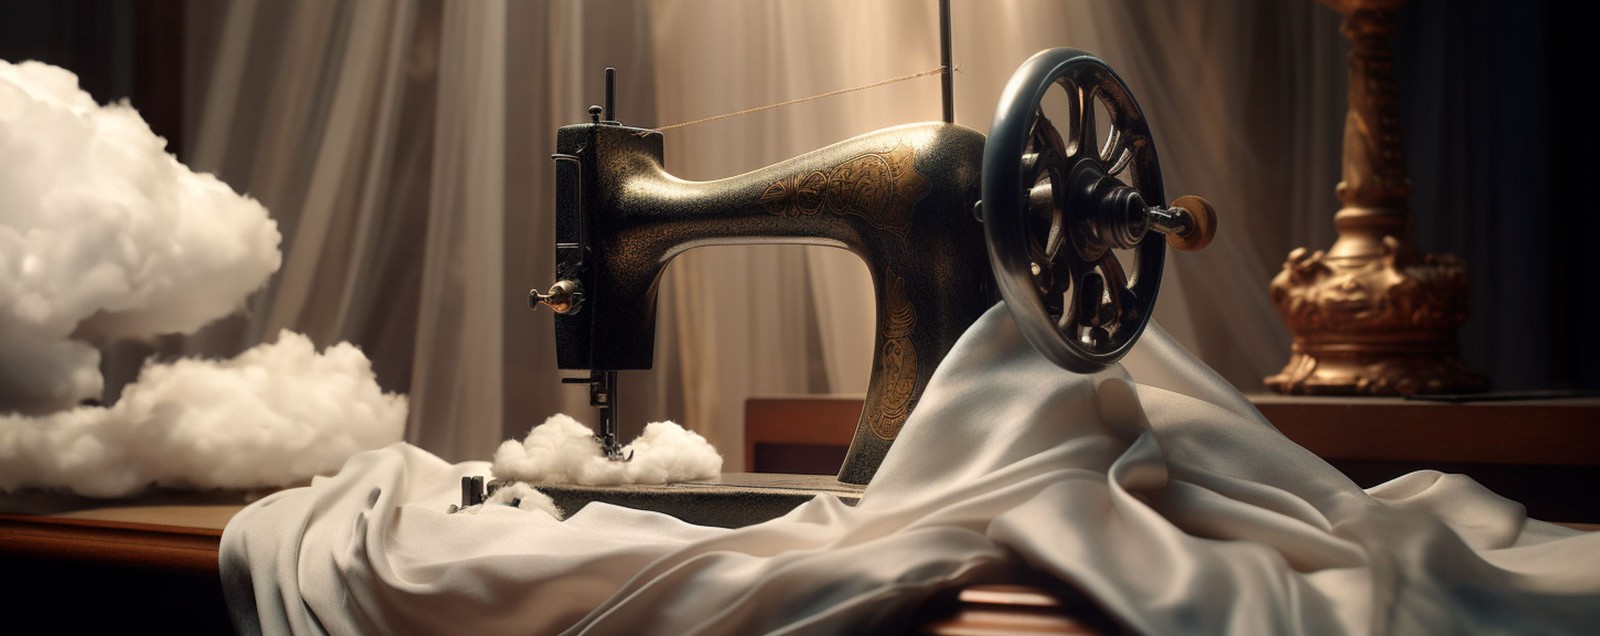 Transformar el CO2 en fibras textiles: una revolucionaria innovación